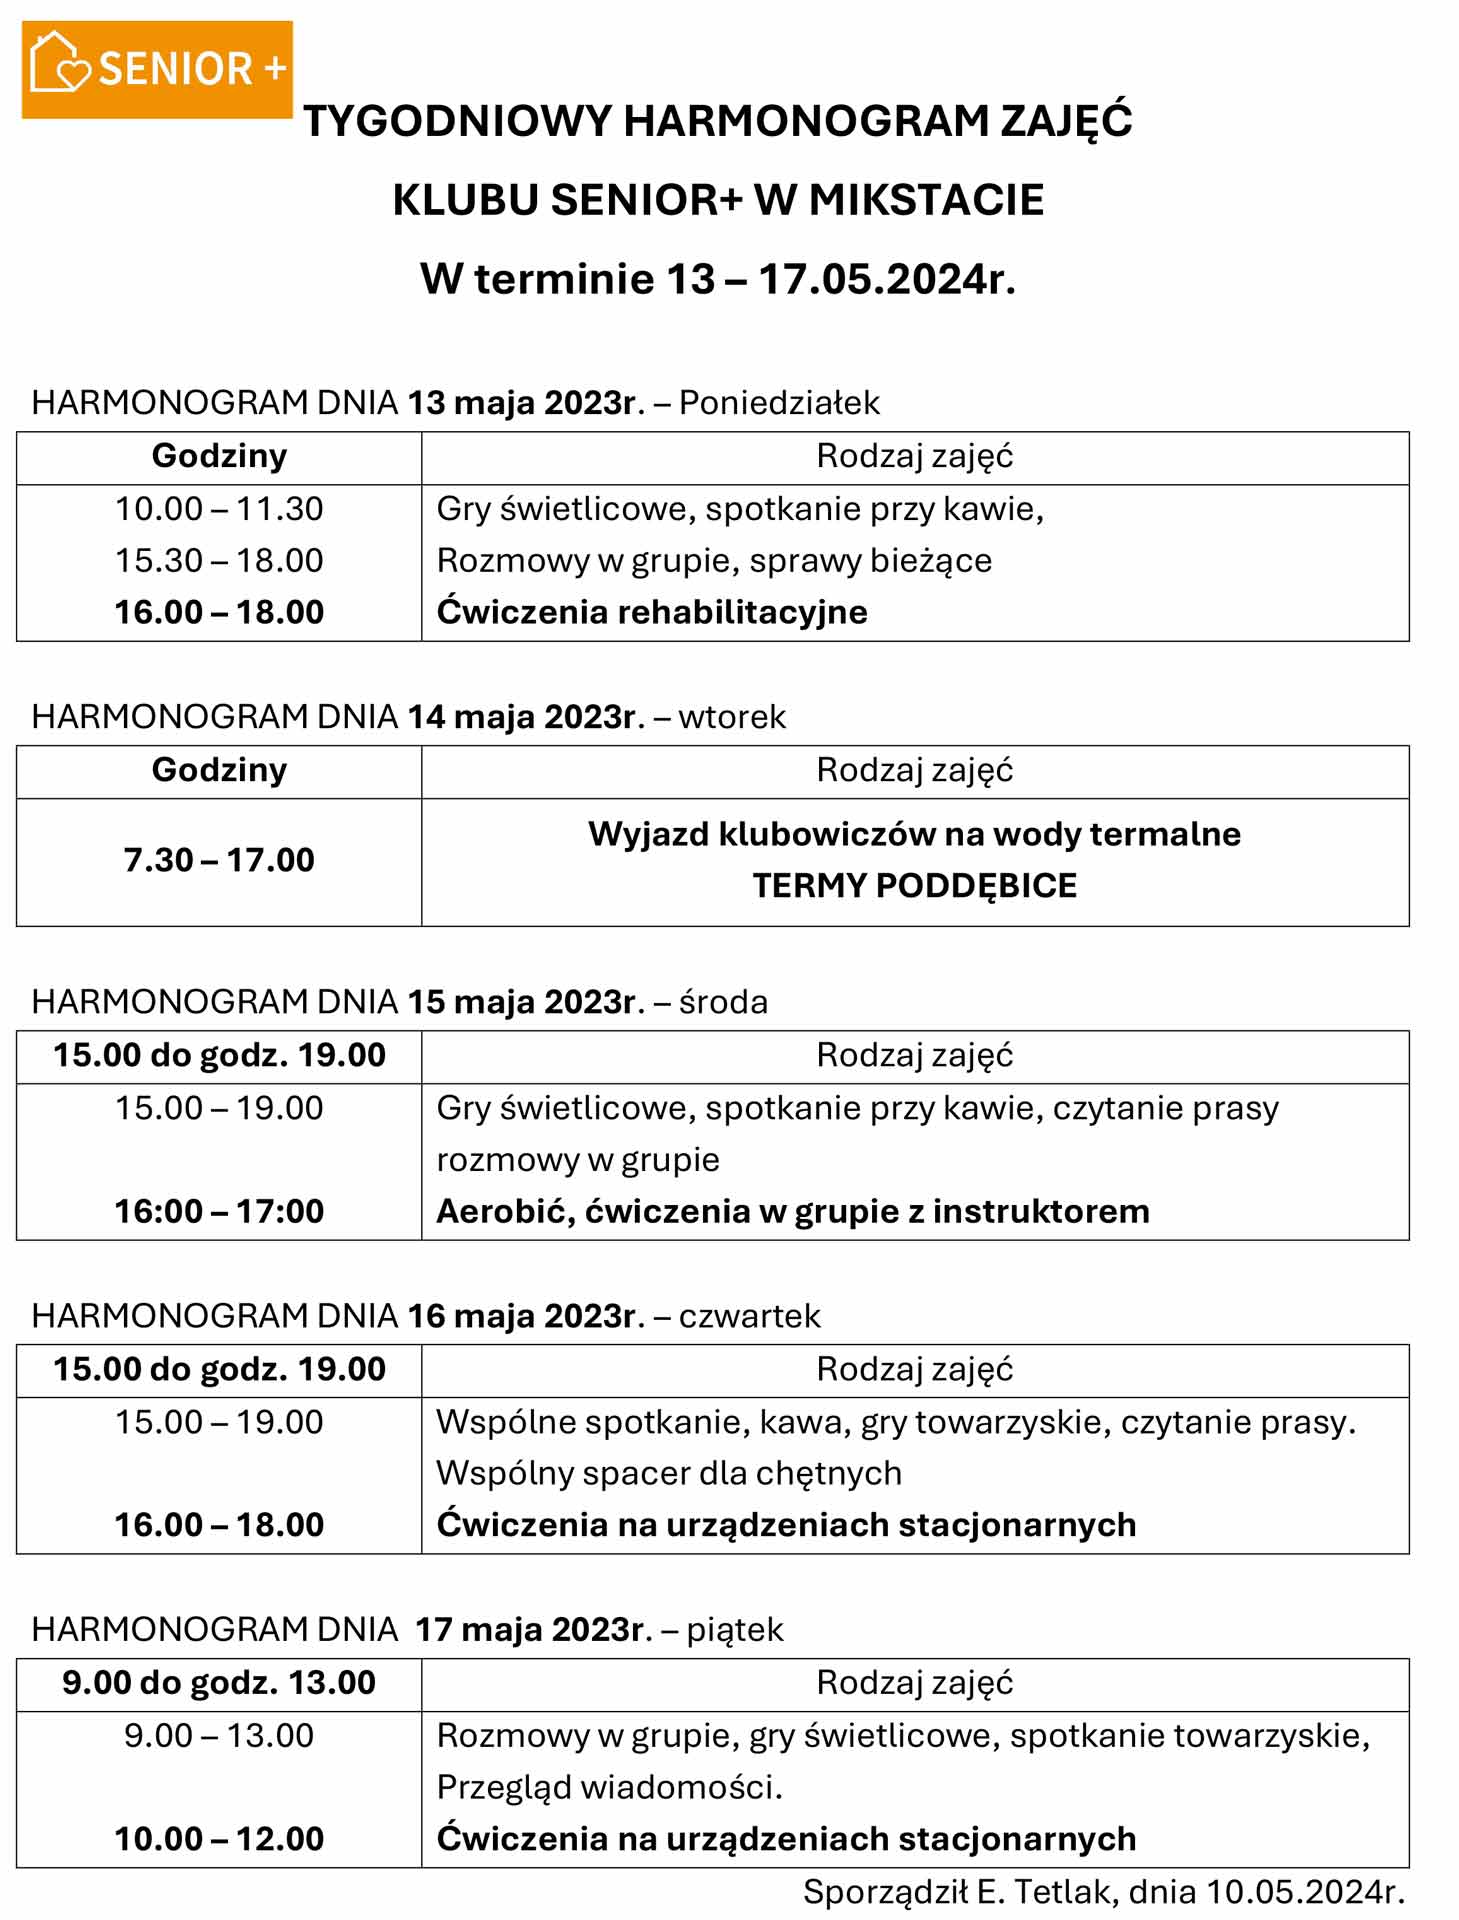 TYGODNIOWY HARMONOGRAM ZAJĘĆ  
KLUBU SENIOR+ W MIKSTACIE 
W terminie 13 – 17.05.2024r.